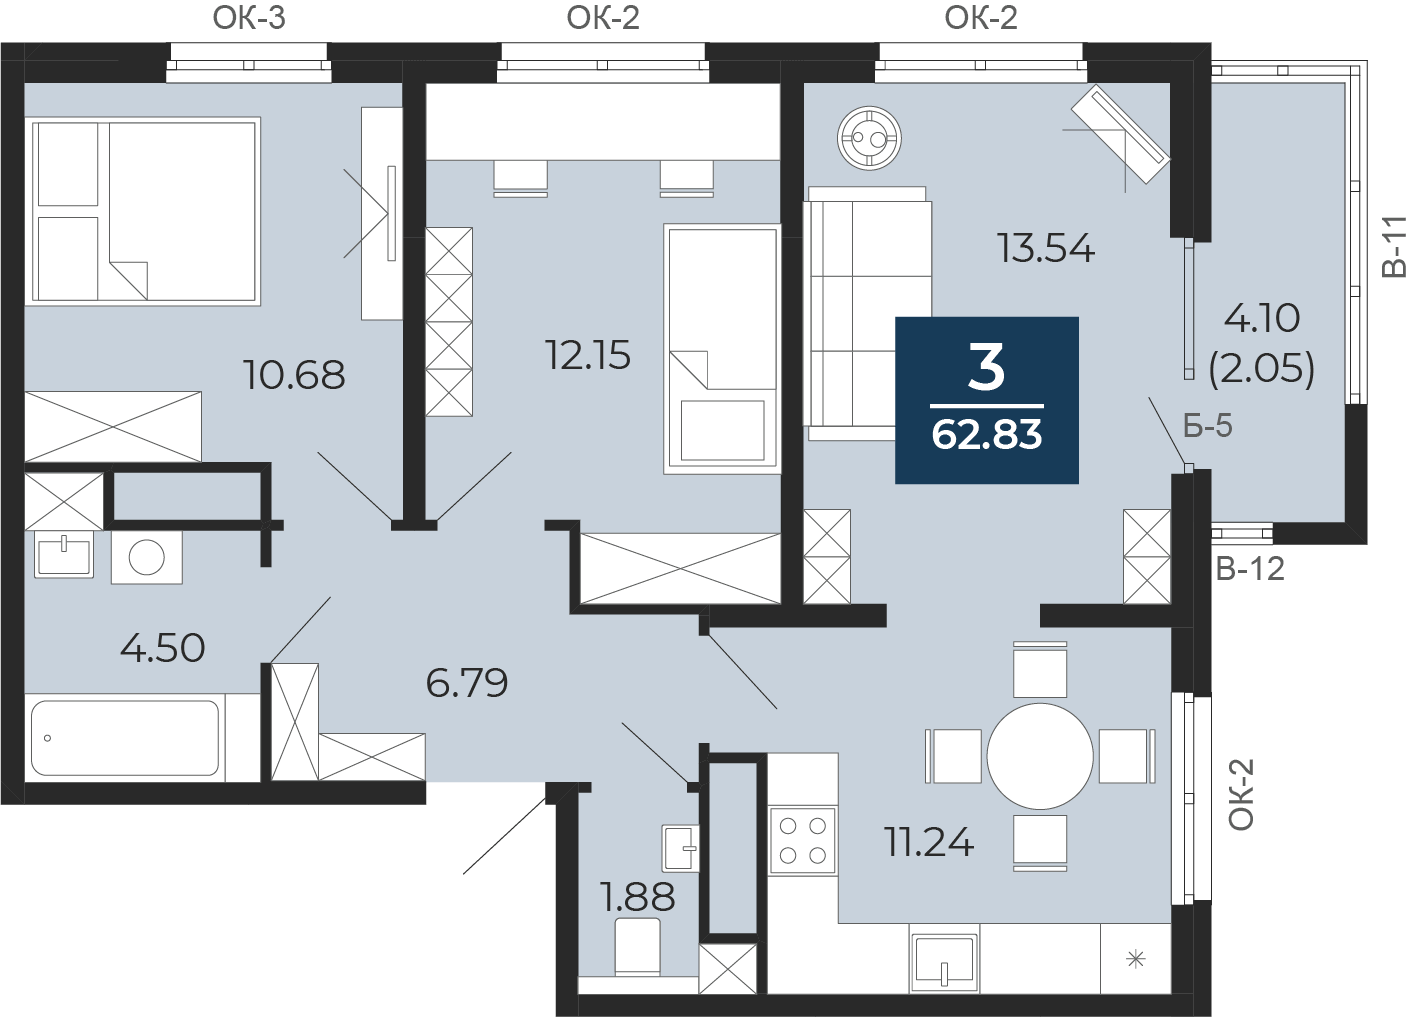 Квартира № 105, 3-комнатная, 62.83 кв. м, 16 этаж